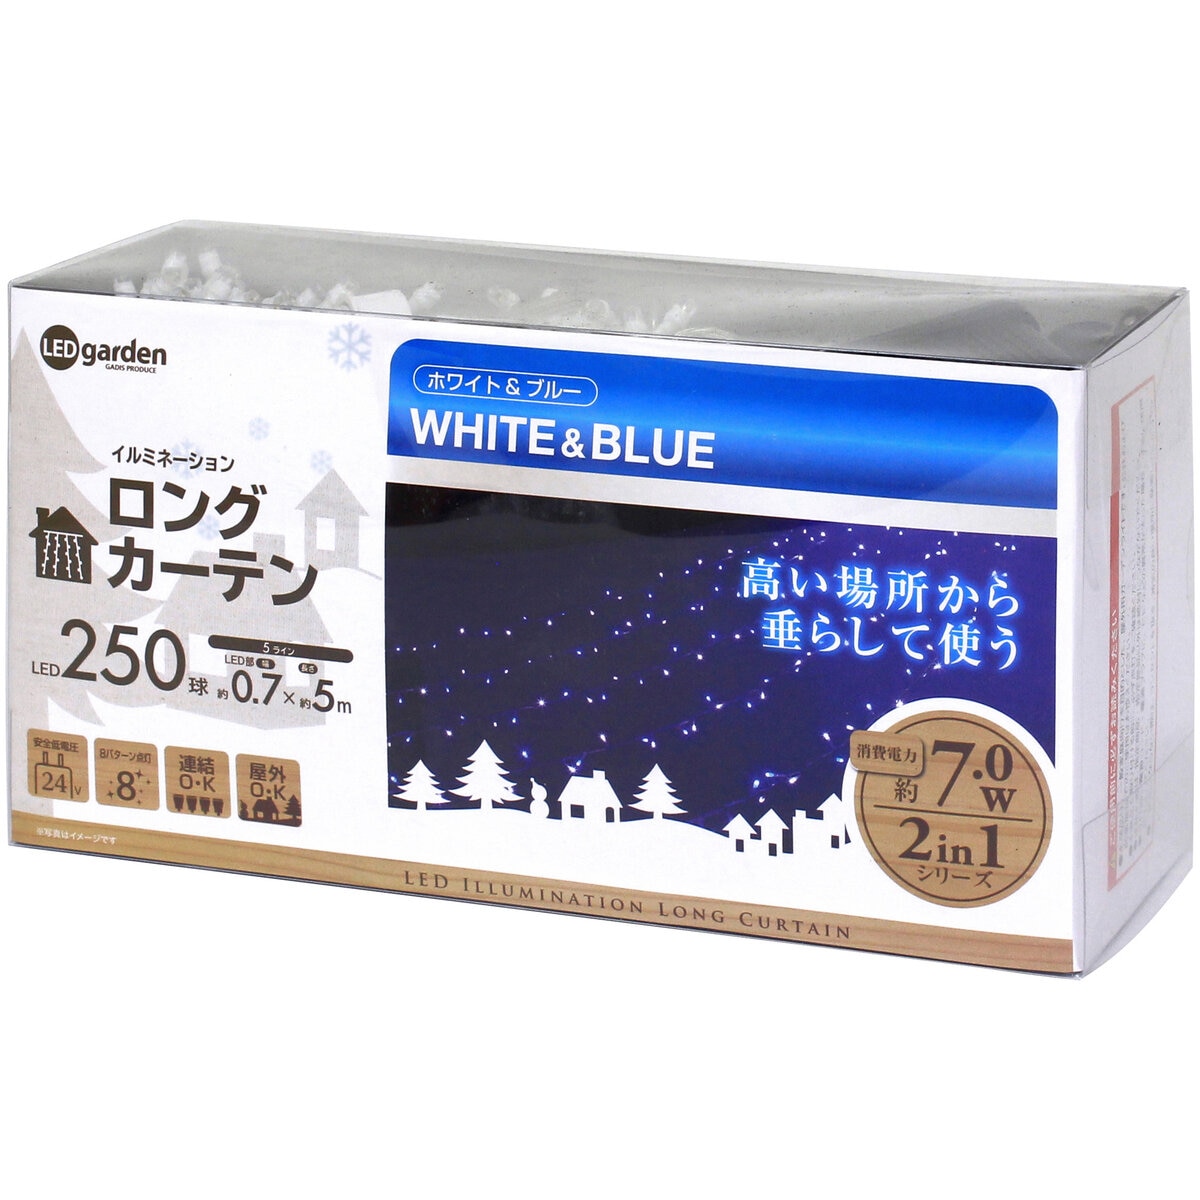 タカショー(Takasho) イルミネーション ロングカーテン 250球 ホワイト ブルー - 3